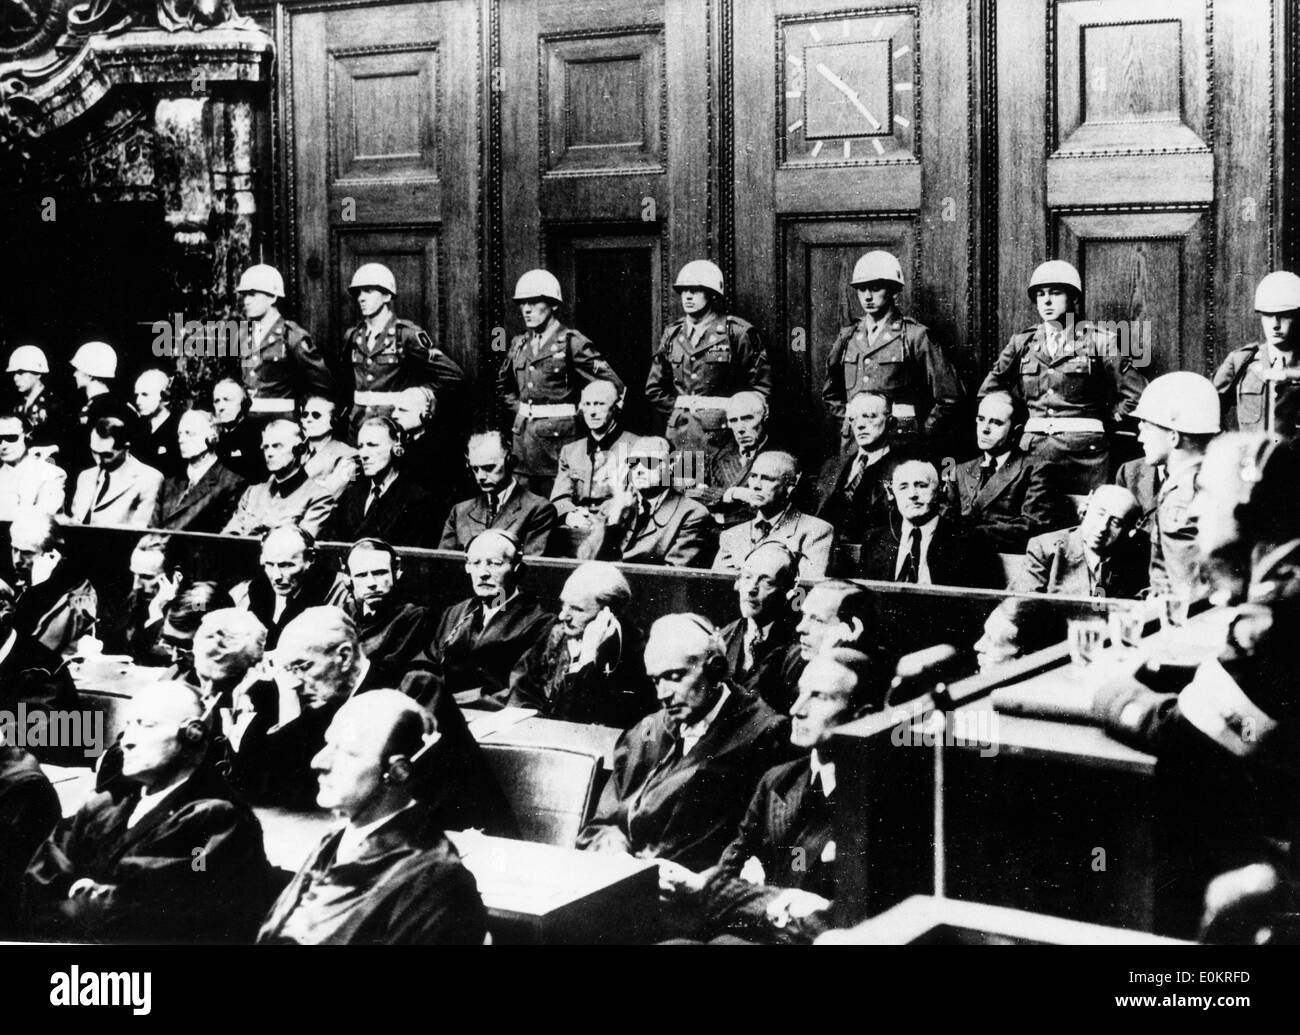 Certains Des Principaux Nazis Vu Assis Dans Le Dock A Nuremberg Au Cours De La Session Finale De La Plus Grande Guerre Dans L Histoire De Premiere E0krfd 